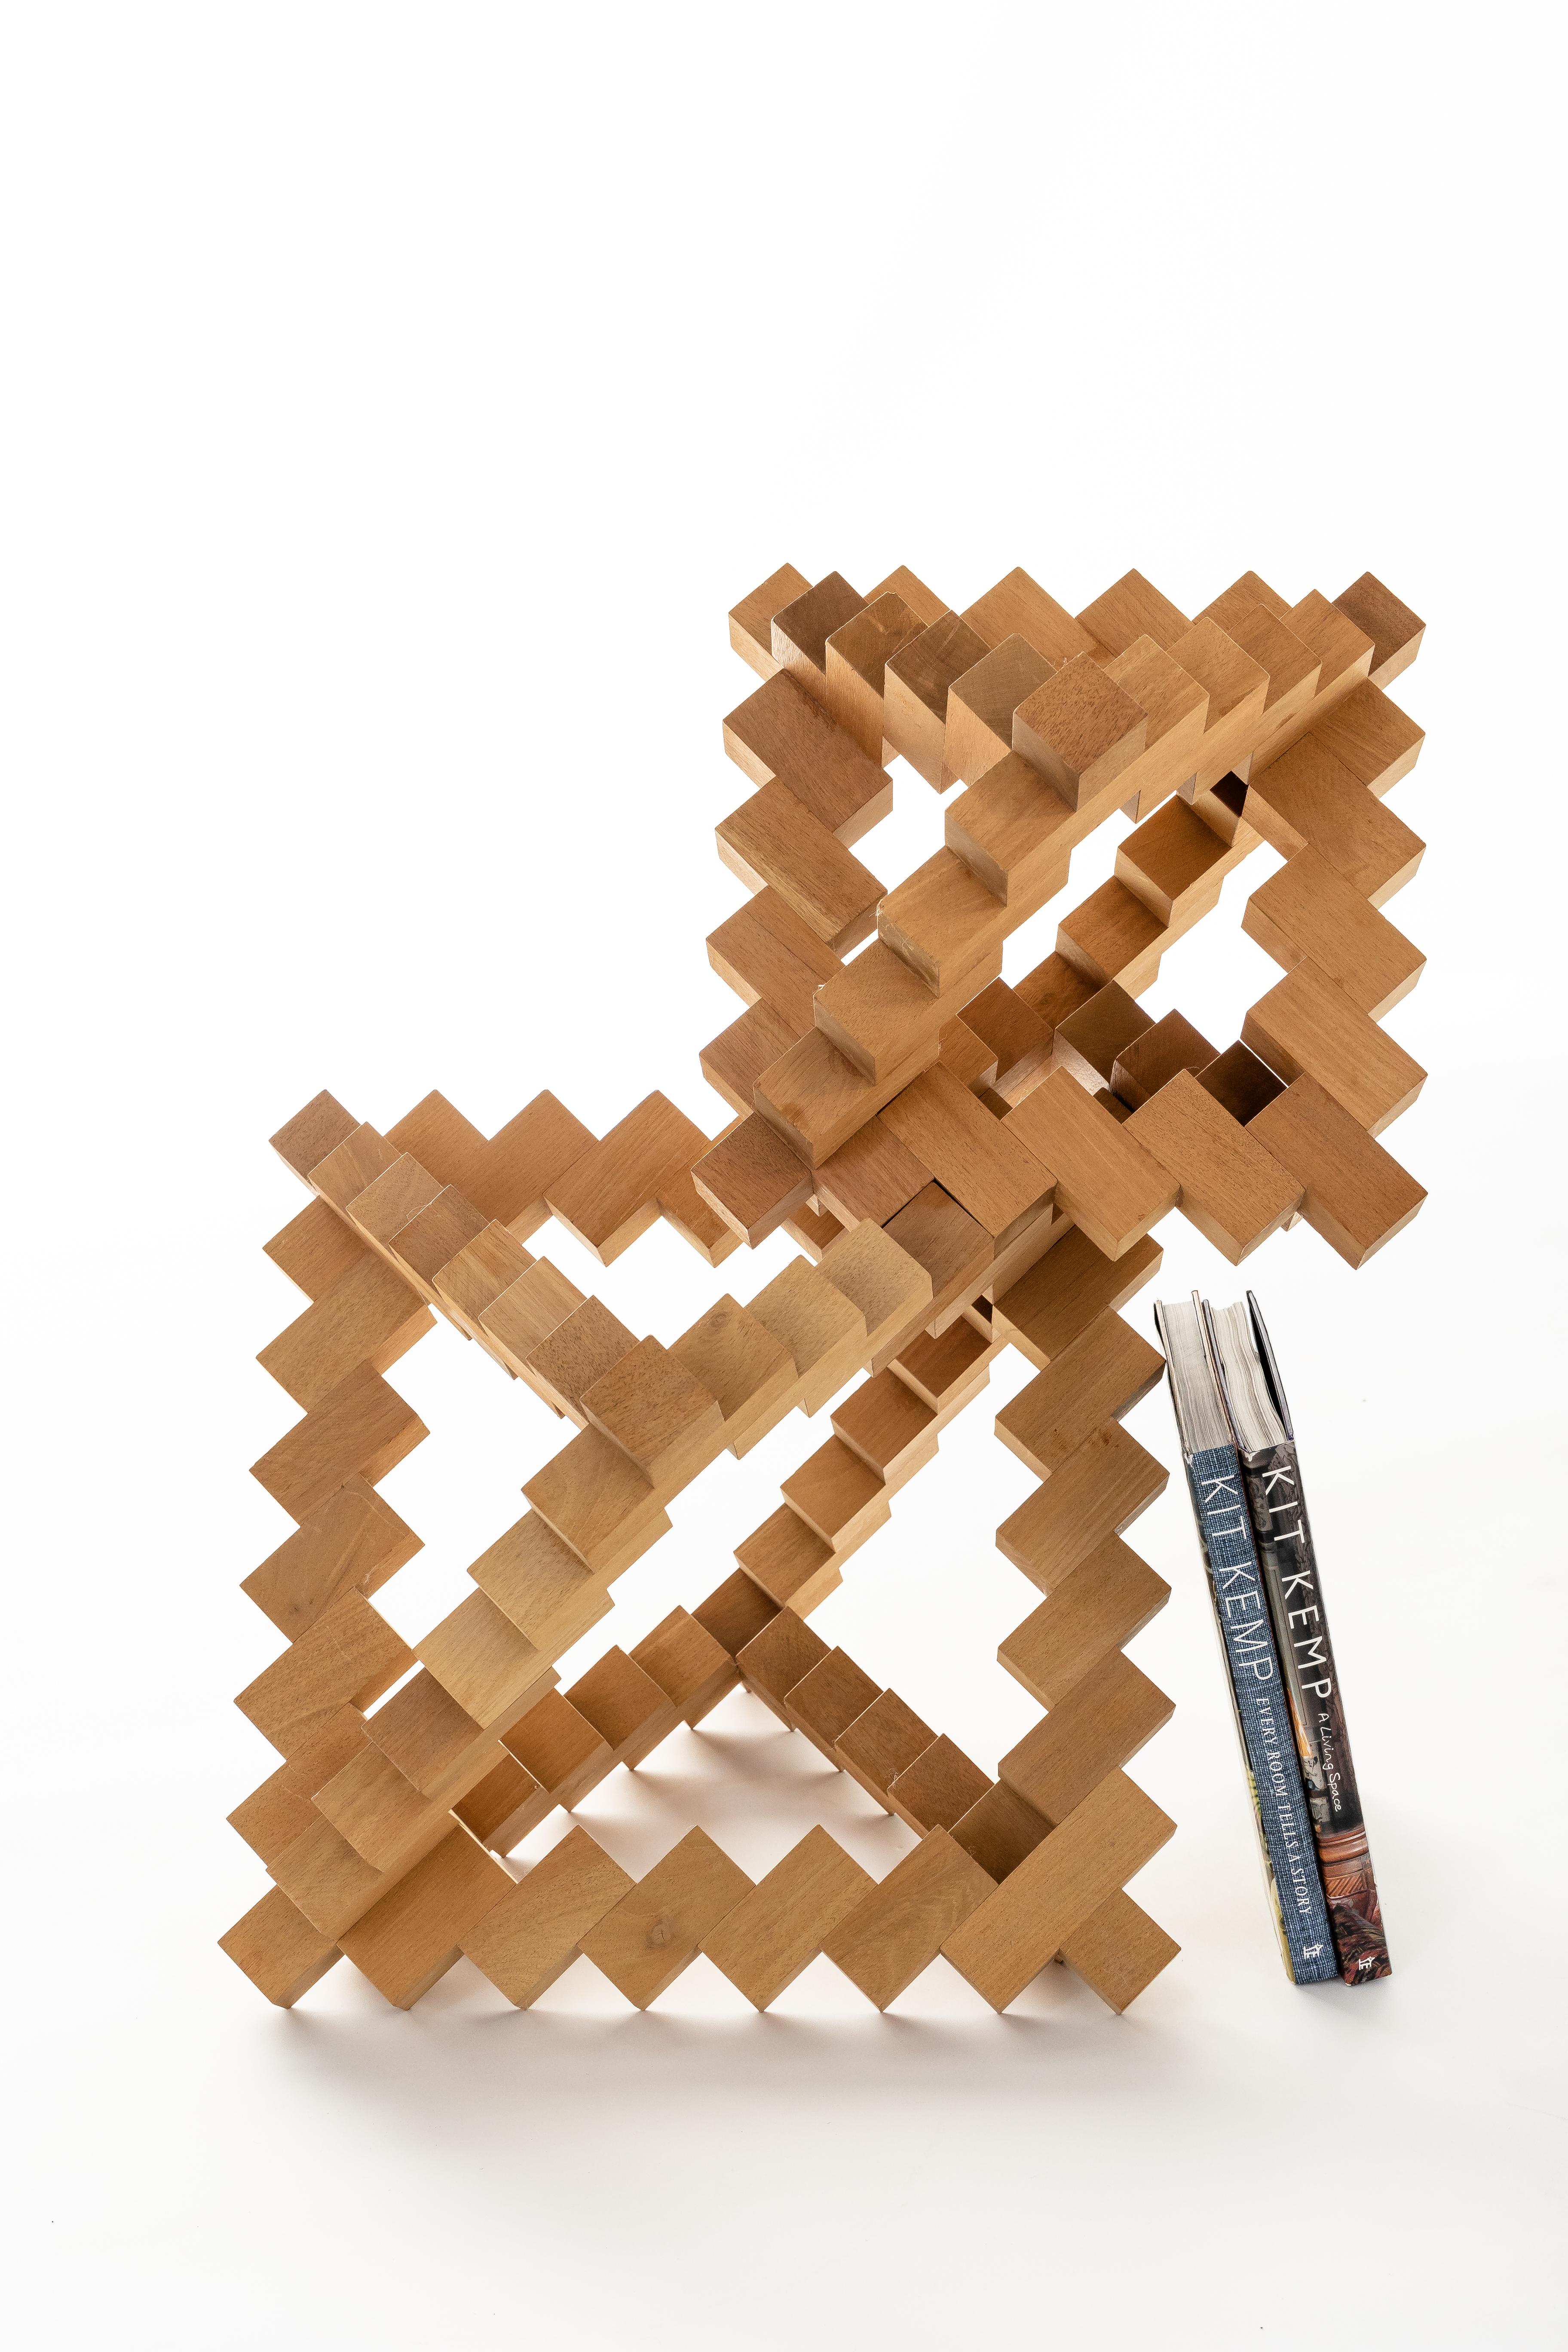 Schöne offene geometrische abstrakte Holzskulptur von Morton Rachofoky.

Die Abmessungen können je nach Konfiguration variieren. 

